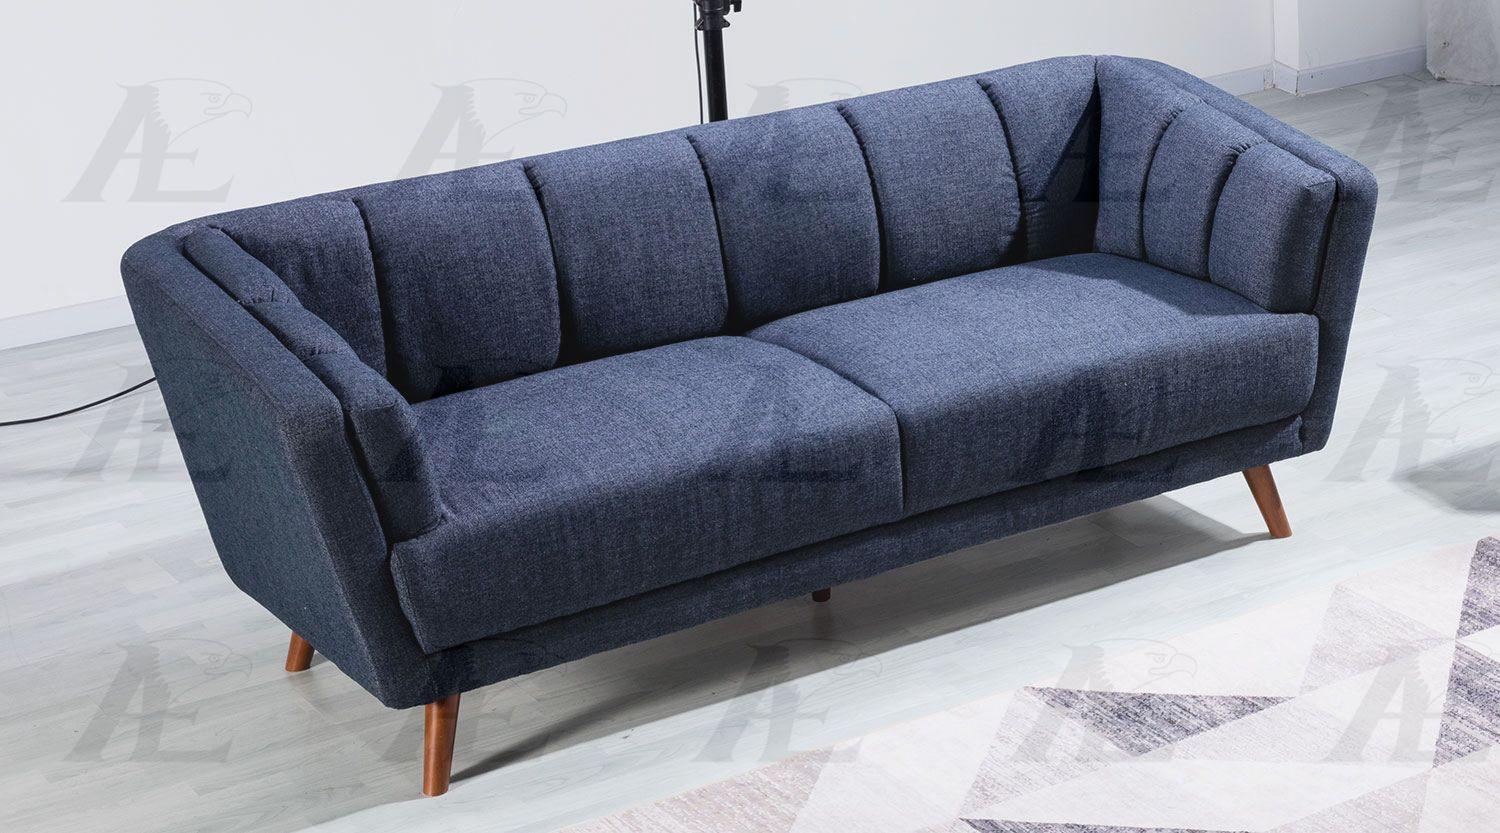 

    
American Eagle Furniture AE555 Sofa and Loveseat Set Blue AE555 -Set-2
